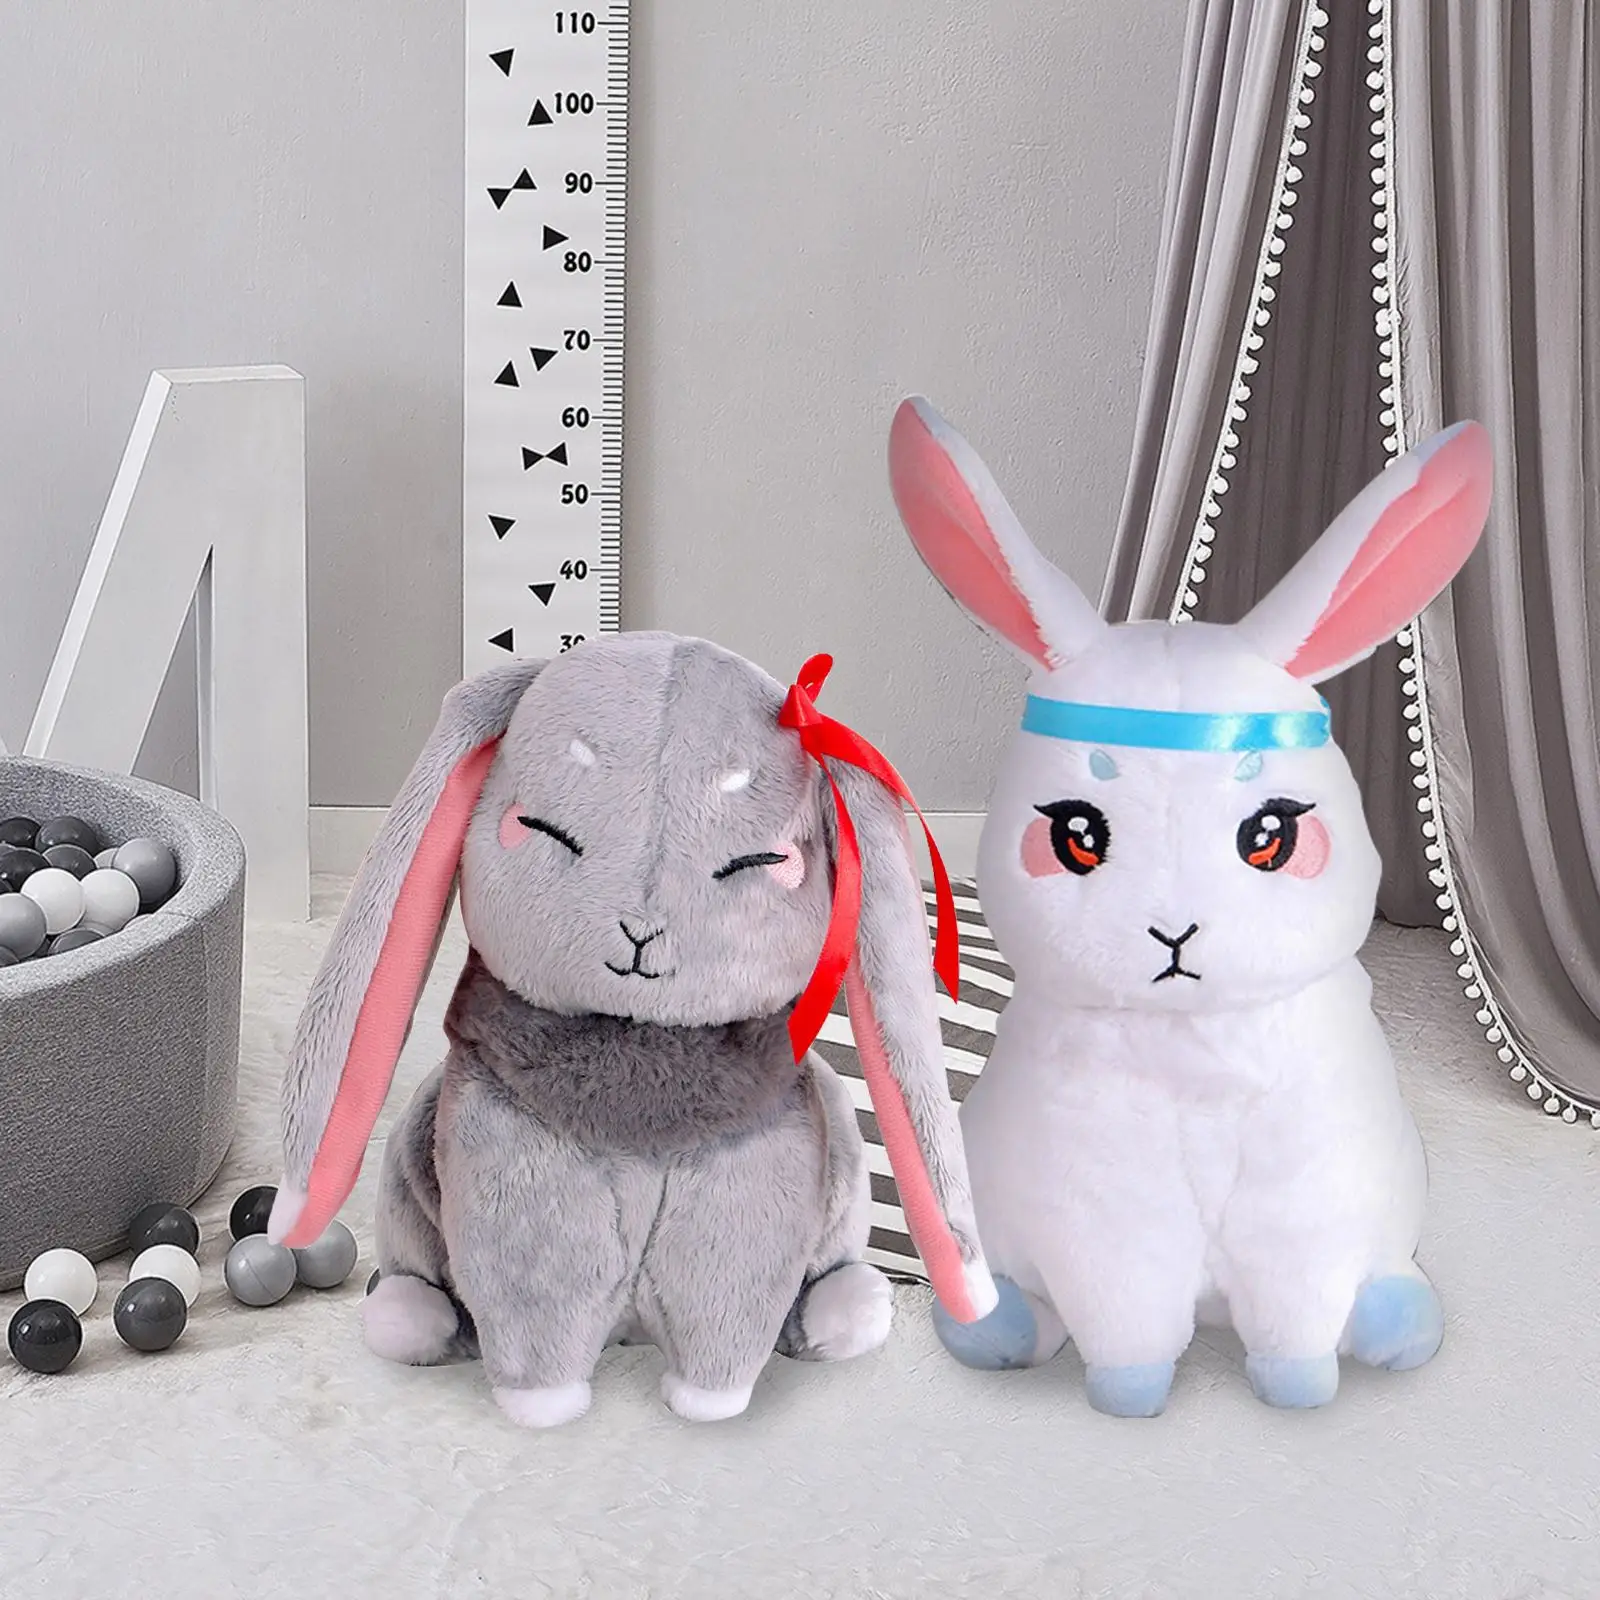 Mo Dao Zu Shi Plush Doll Anime Peluche Kawaii Rabbit Stuffed Animal Wei Wu Xian Lan Wang Ji Pet Stuffed Toys Kids Gifts Soft Toy